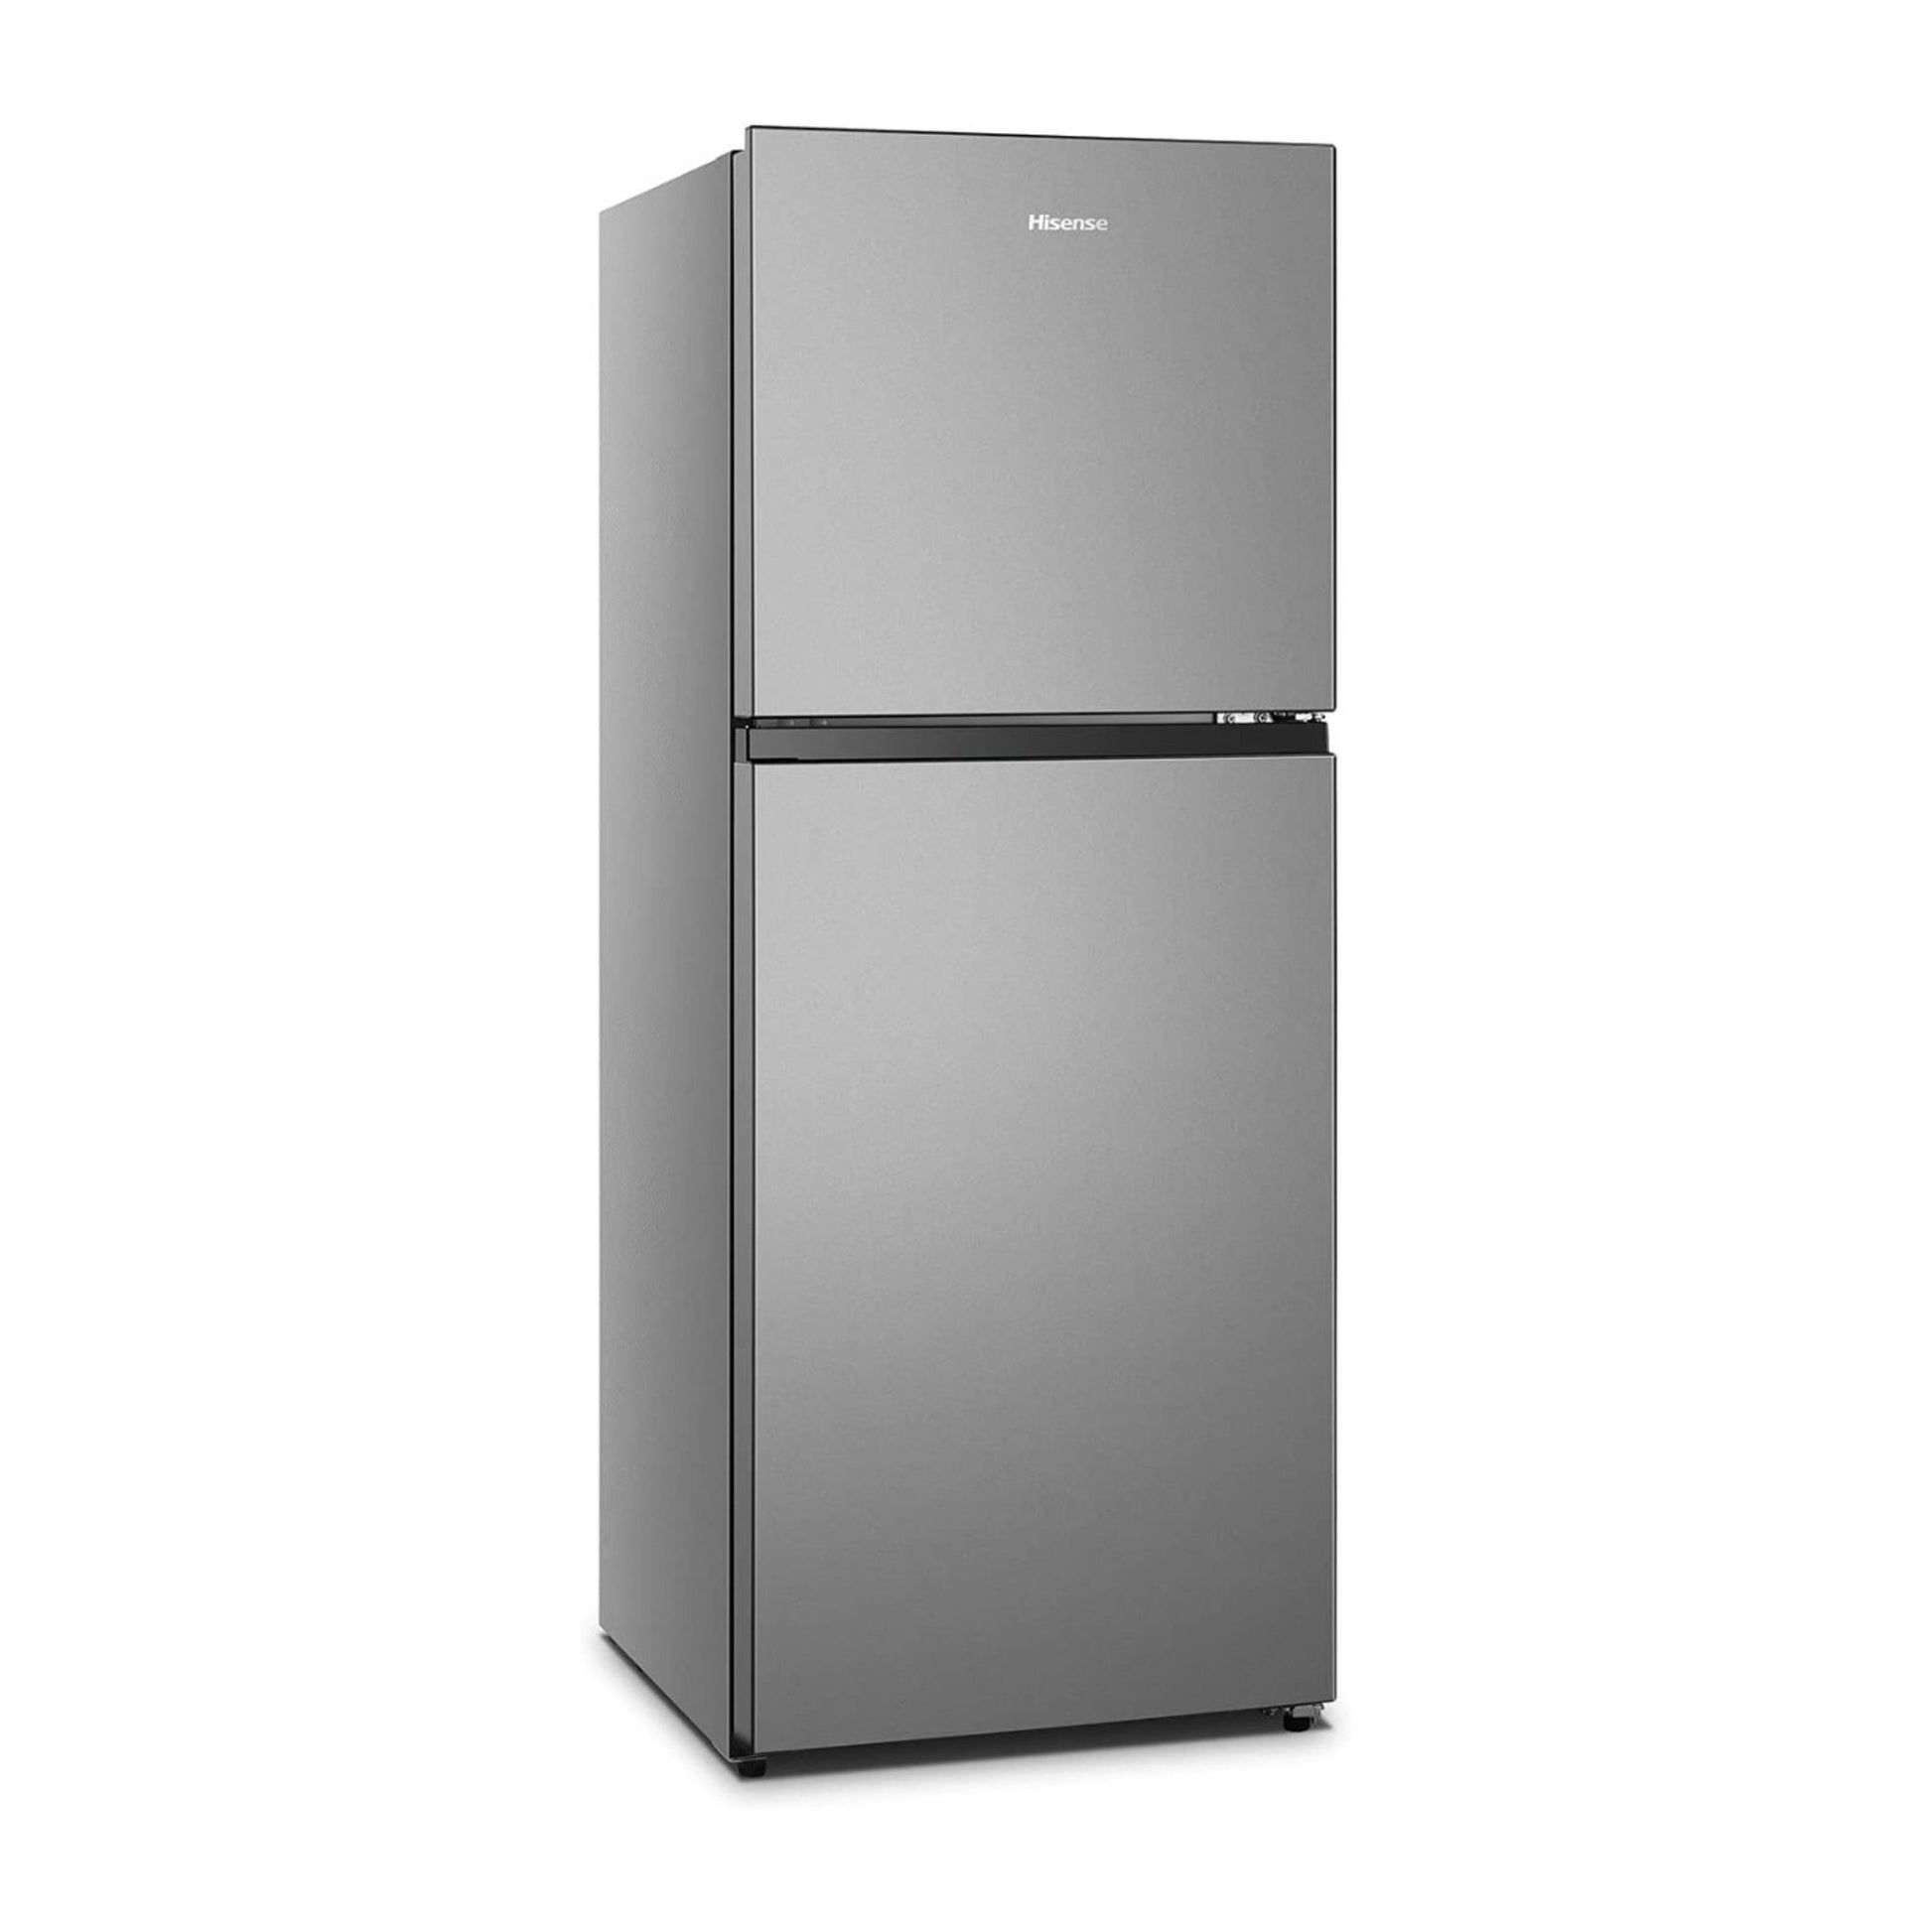 Hisense 264L Double Door Refrigerator, RT264N4DGN